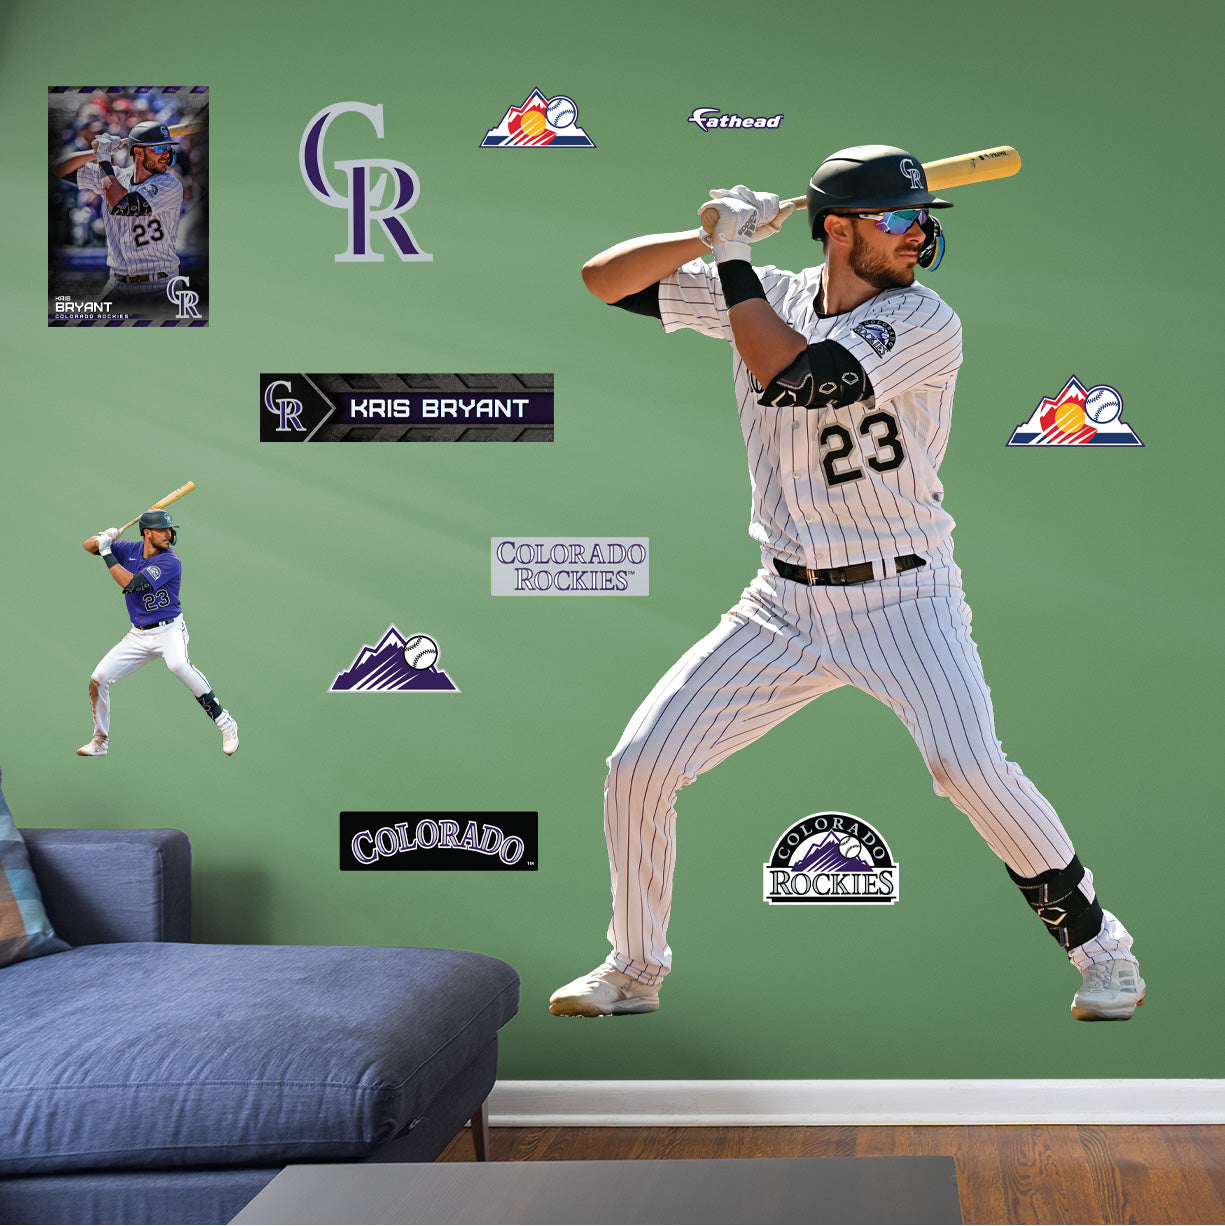 Kris Bryant Baseball Player Wallpaper  HD Wallpapers